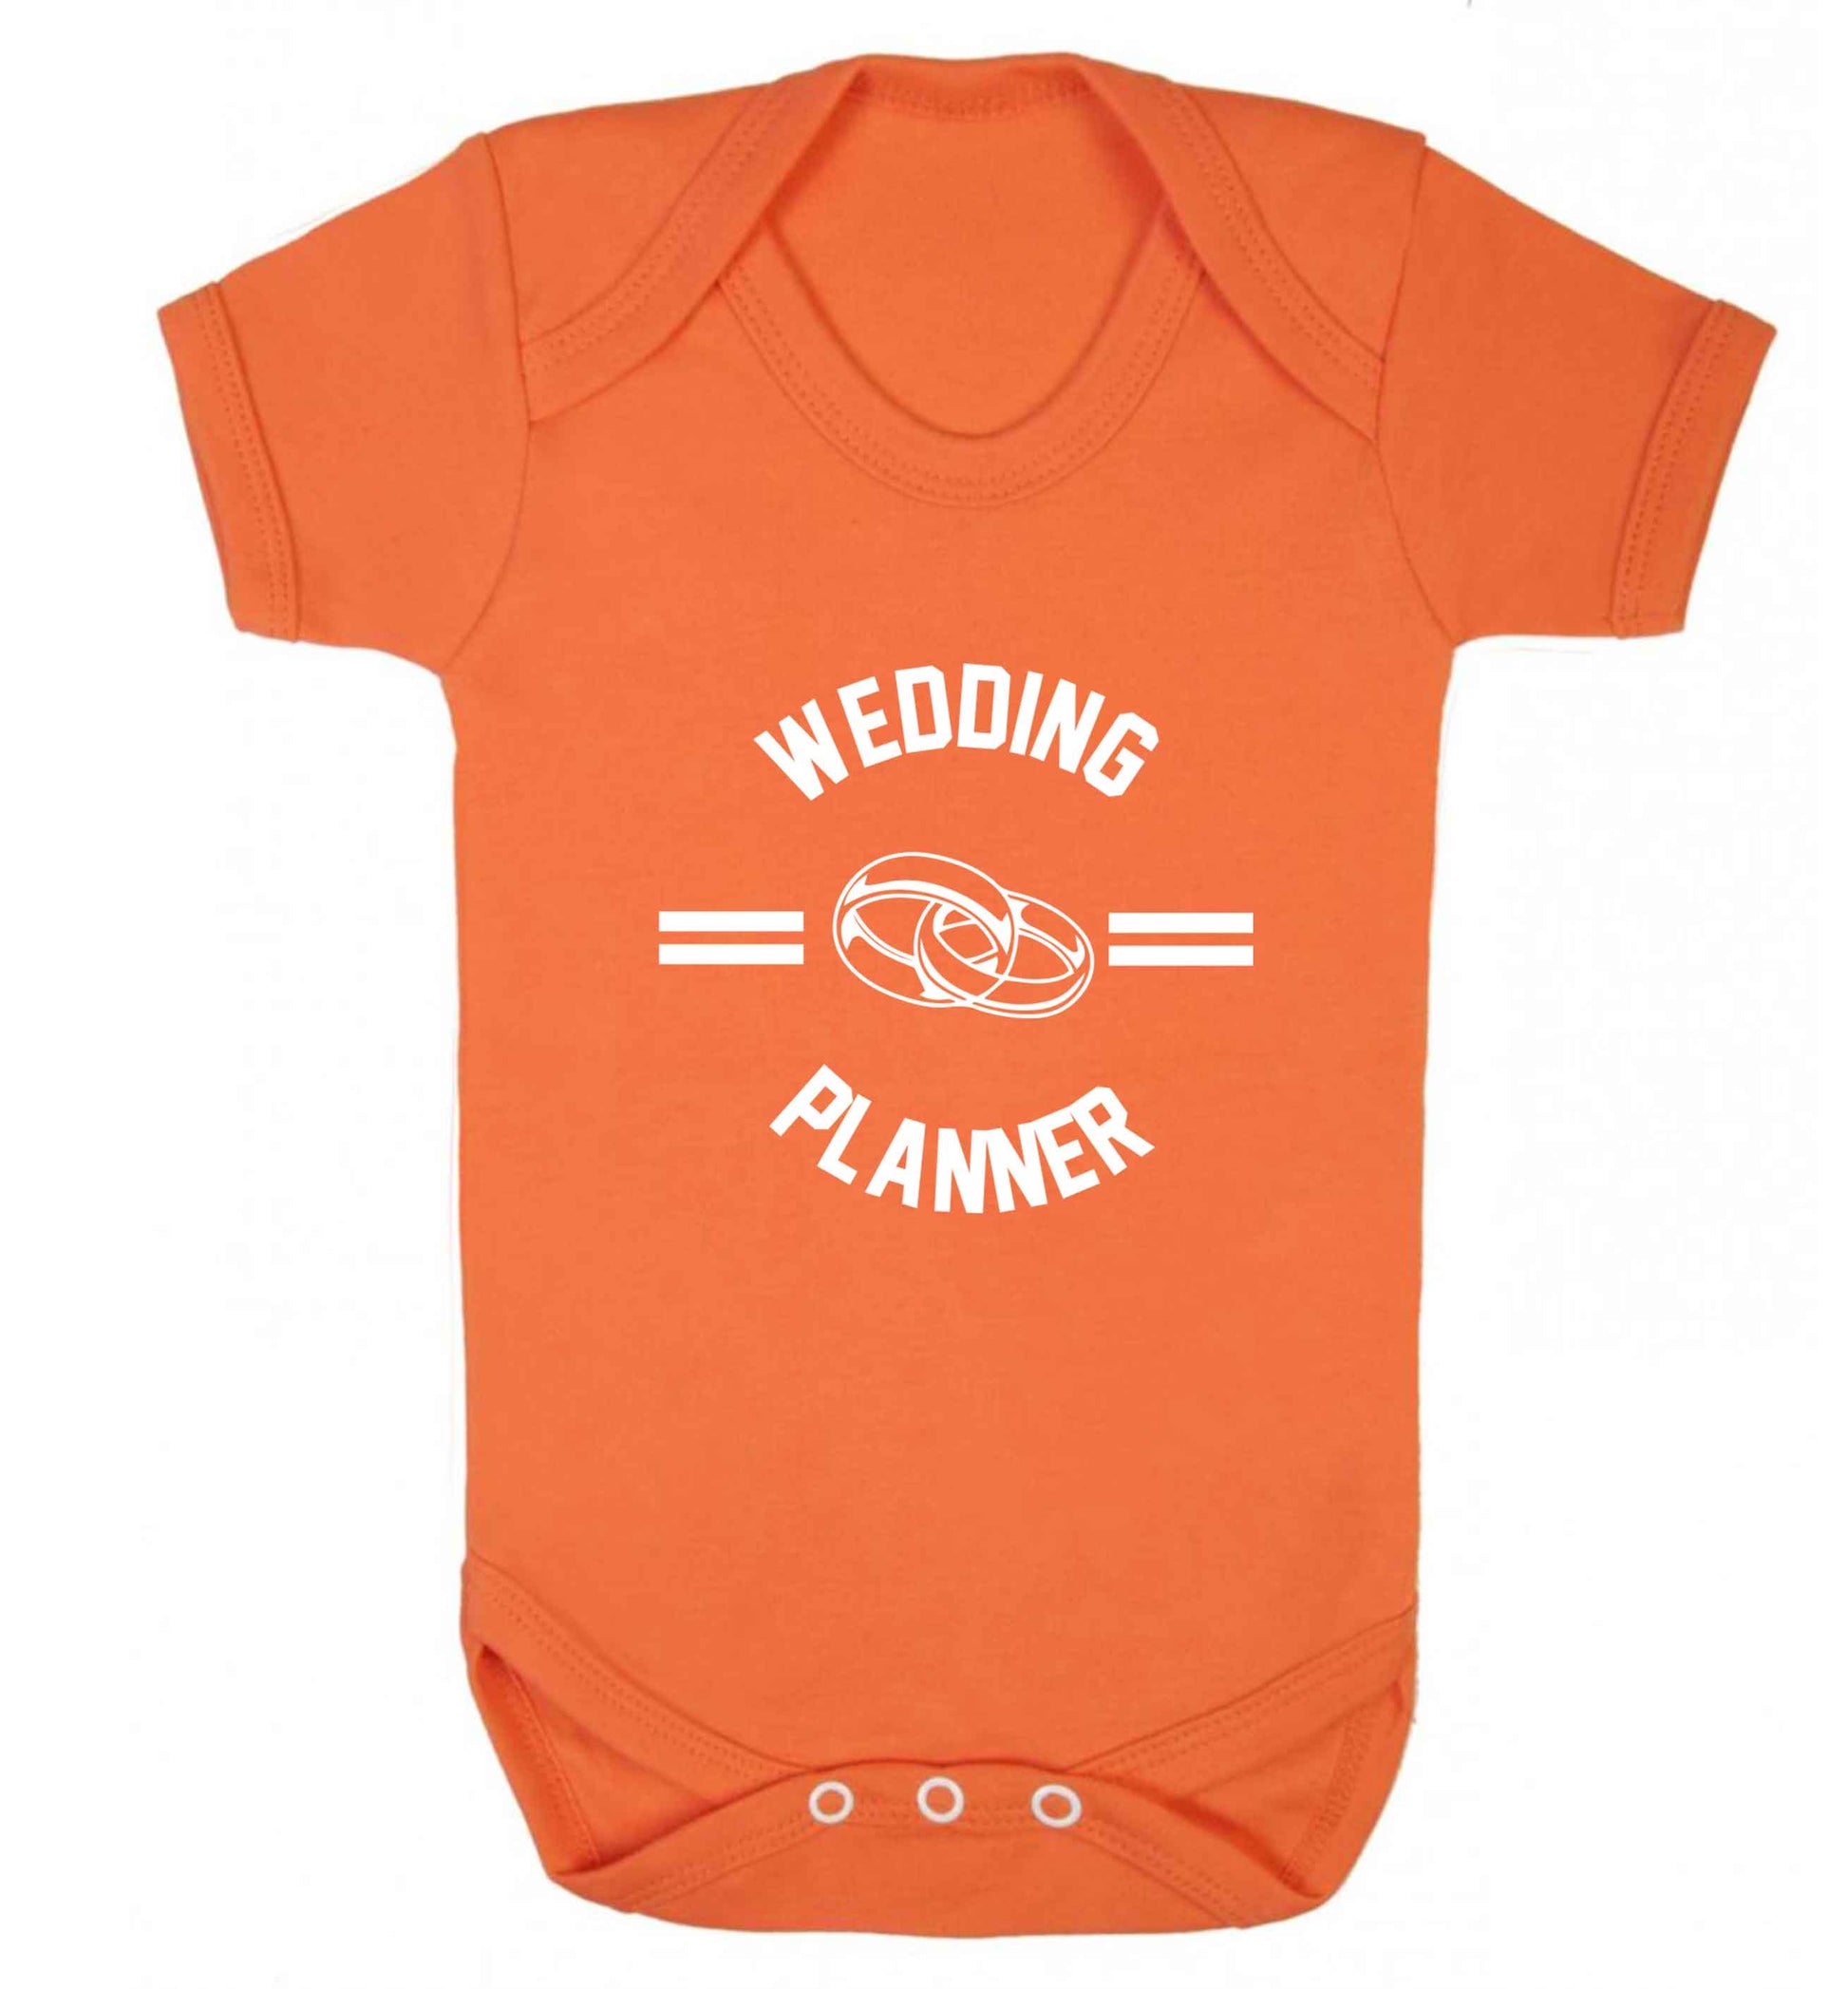 Wedding planner baby vest orange 18-24 months